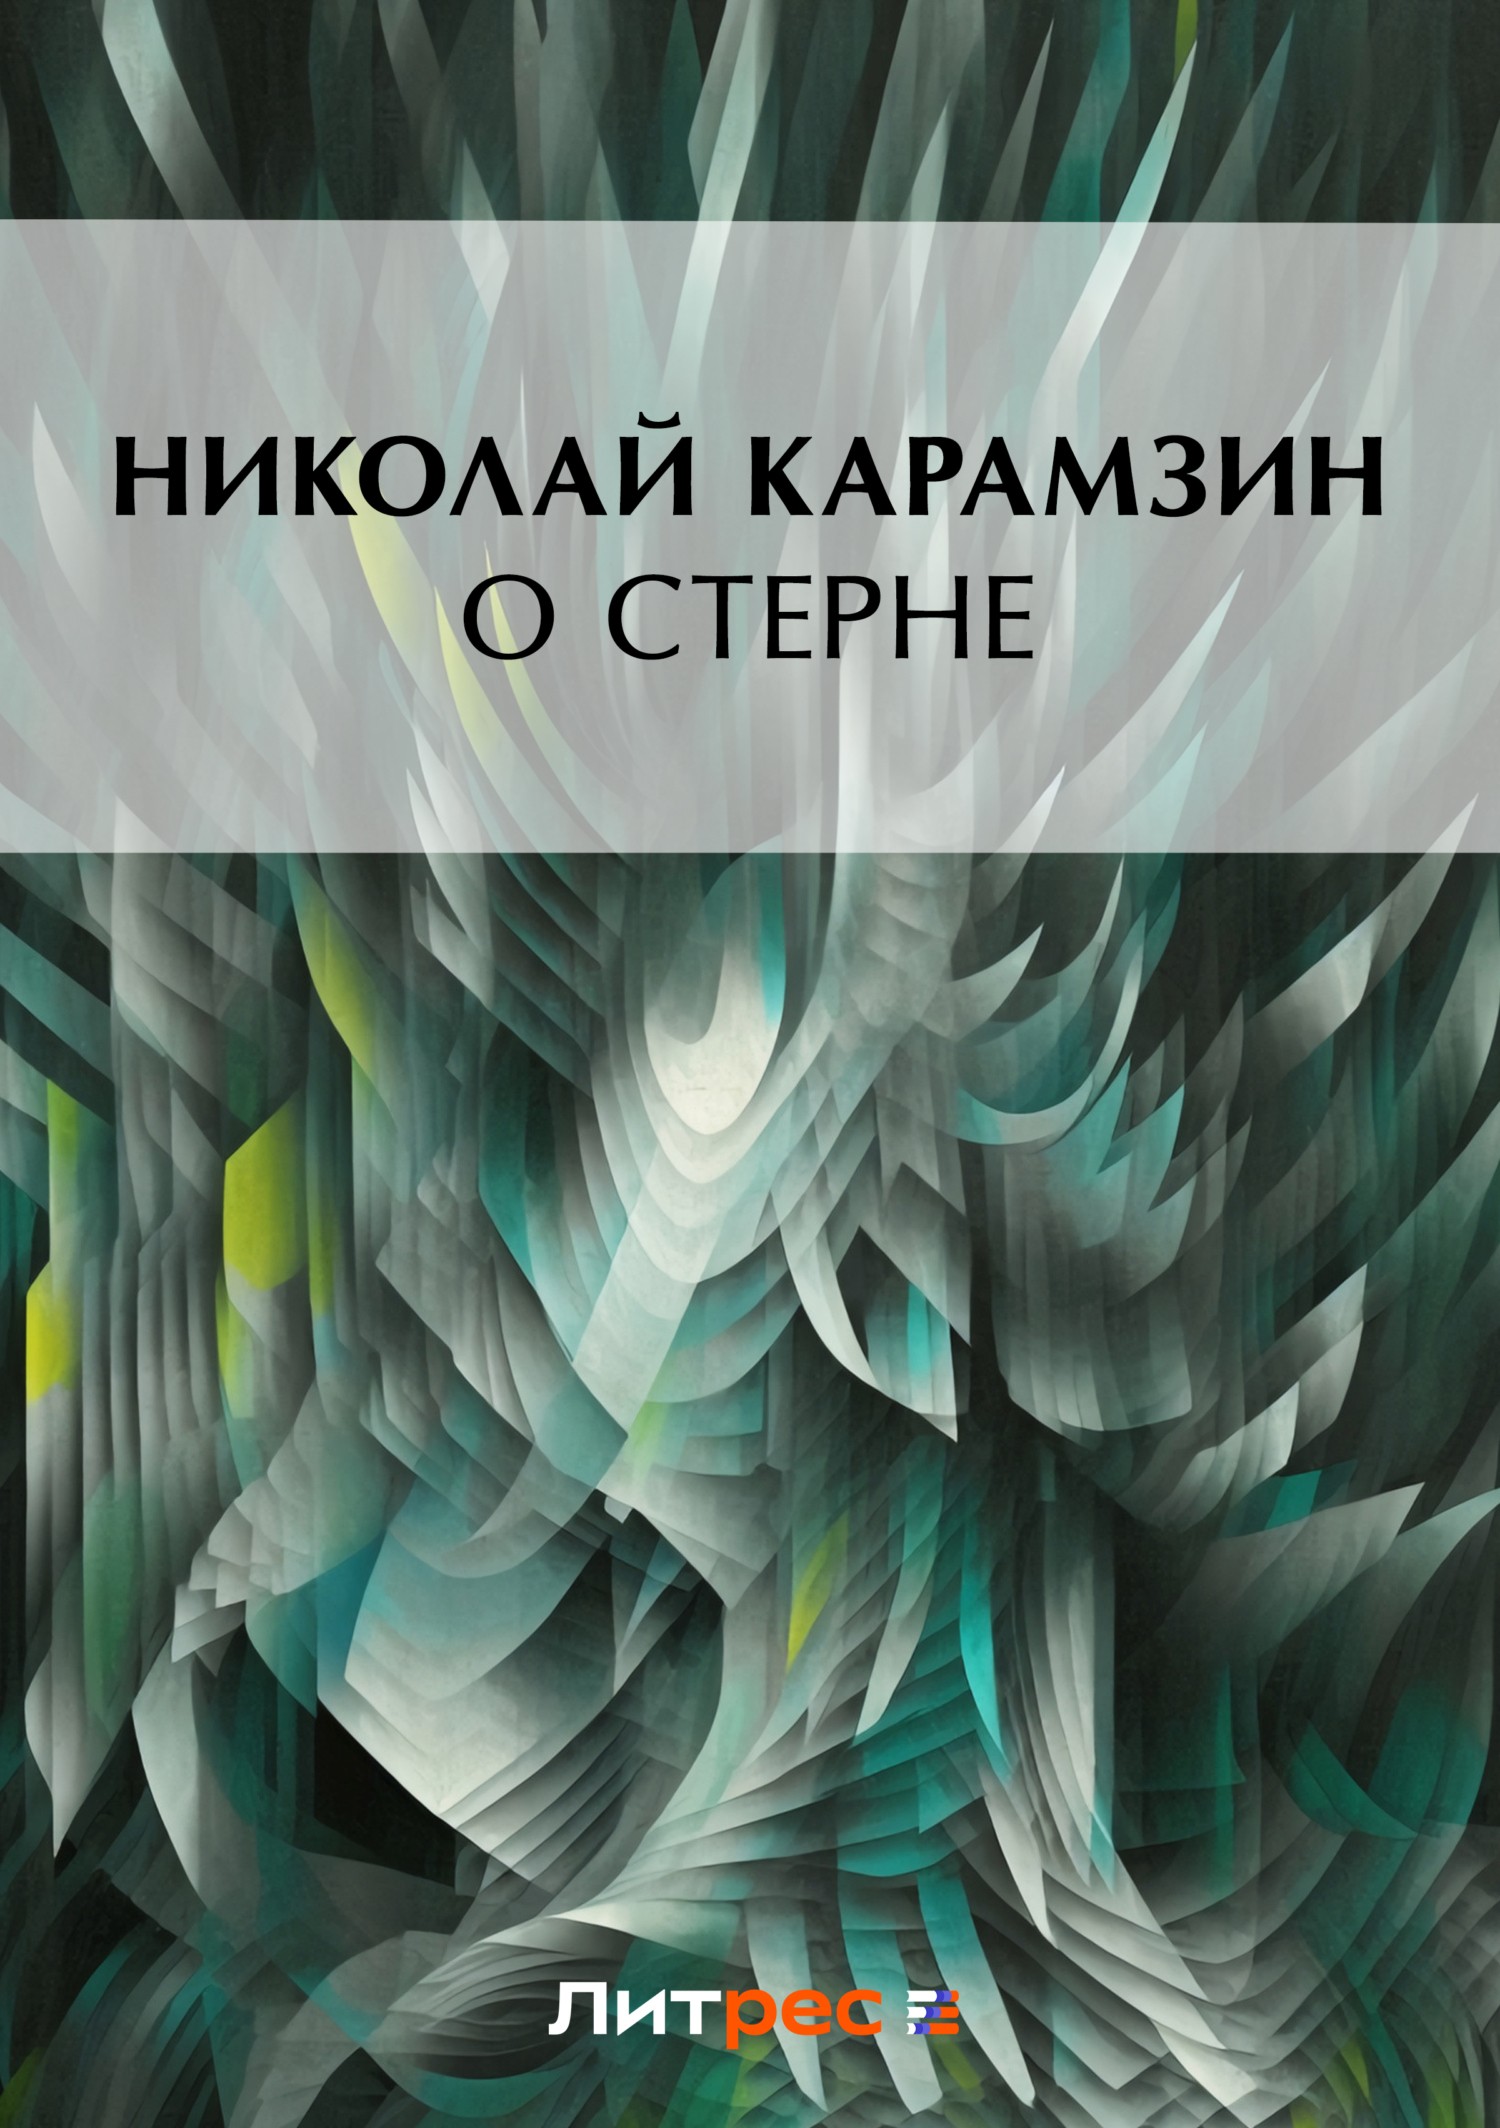 Книга О Стерне из серии , созданная Николай Карамзин, может относится к жанру Критика. Стоимость книги О Стерне  с идентификатором 2975865 составляет 5.99 руб.